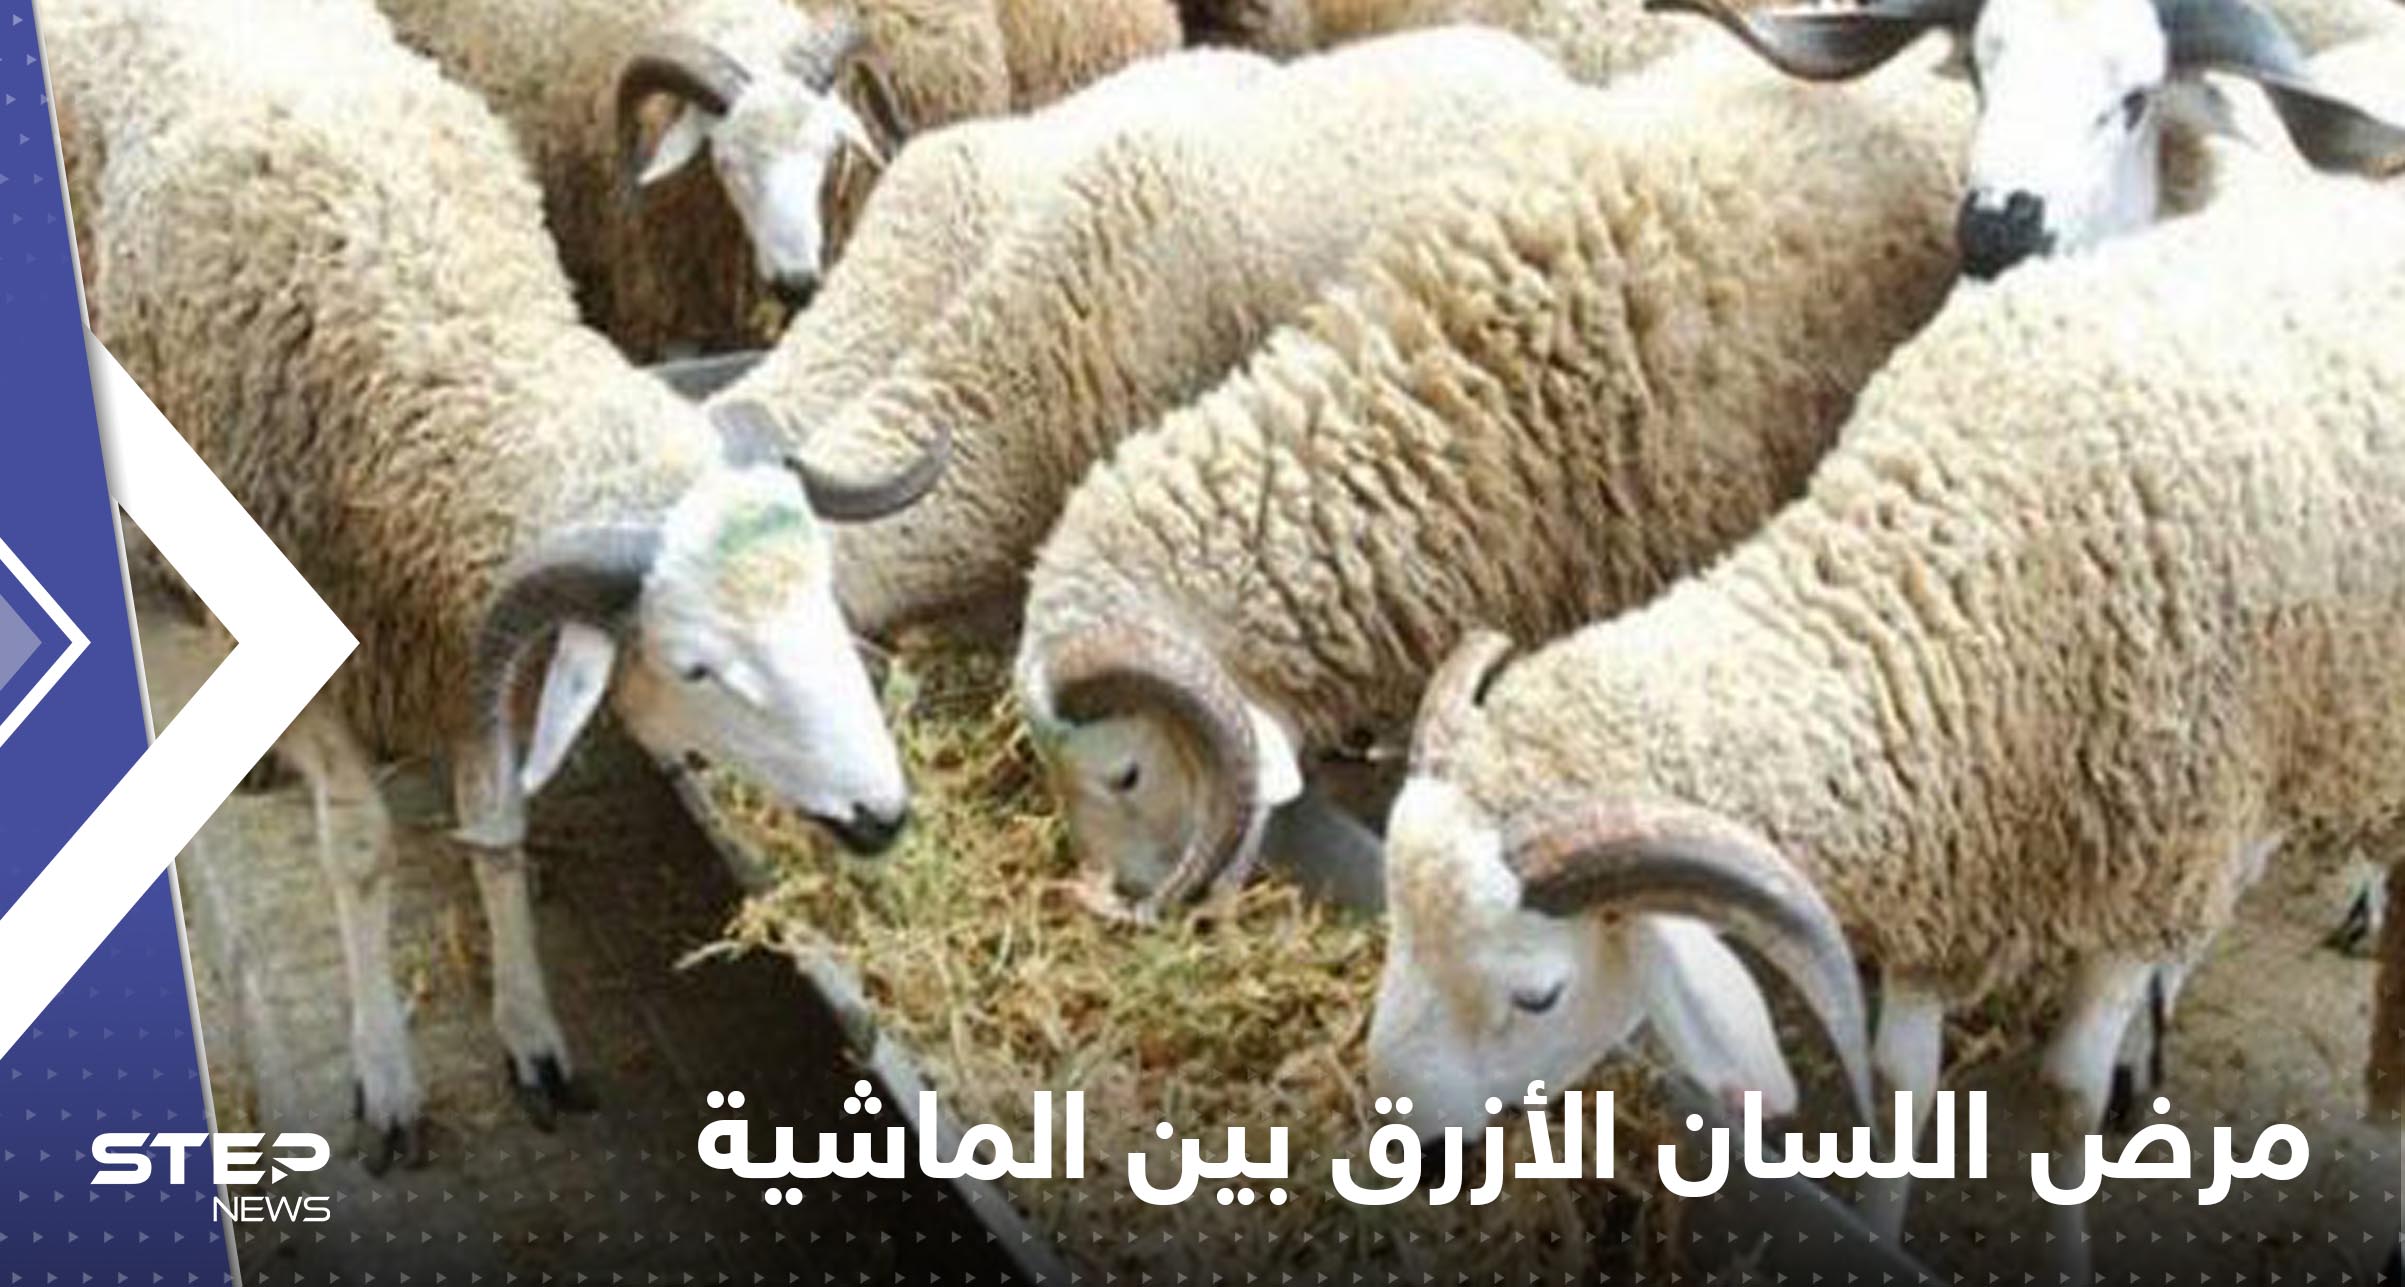 مرض اللسان الأزرق بين الماشية يظهر في بلد عربي.. والسلطات تتخذ إجراءات صارمة